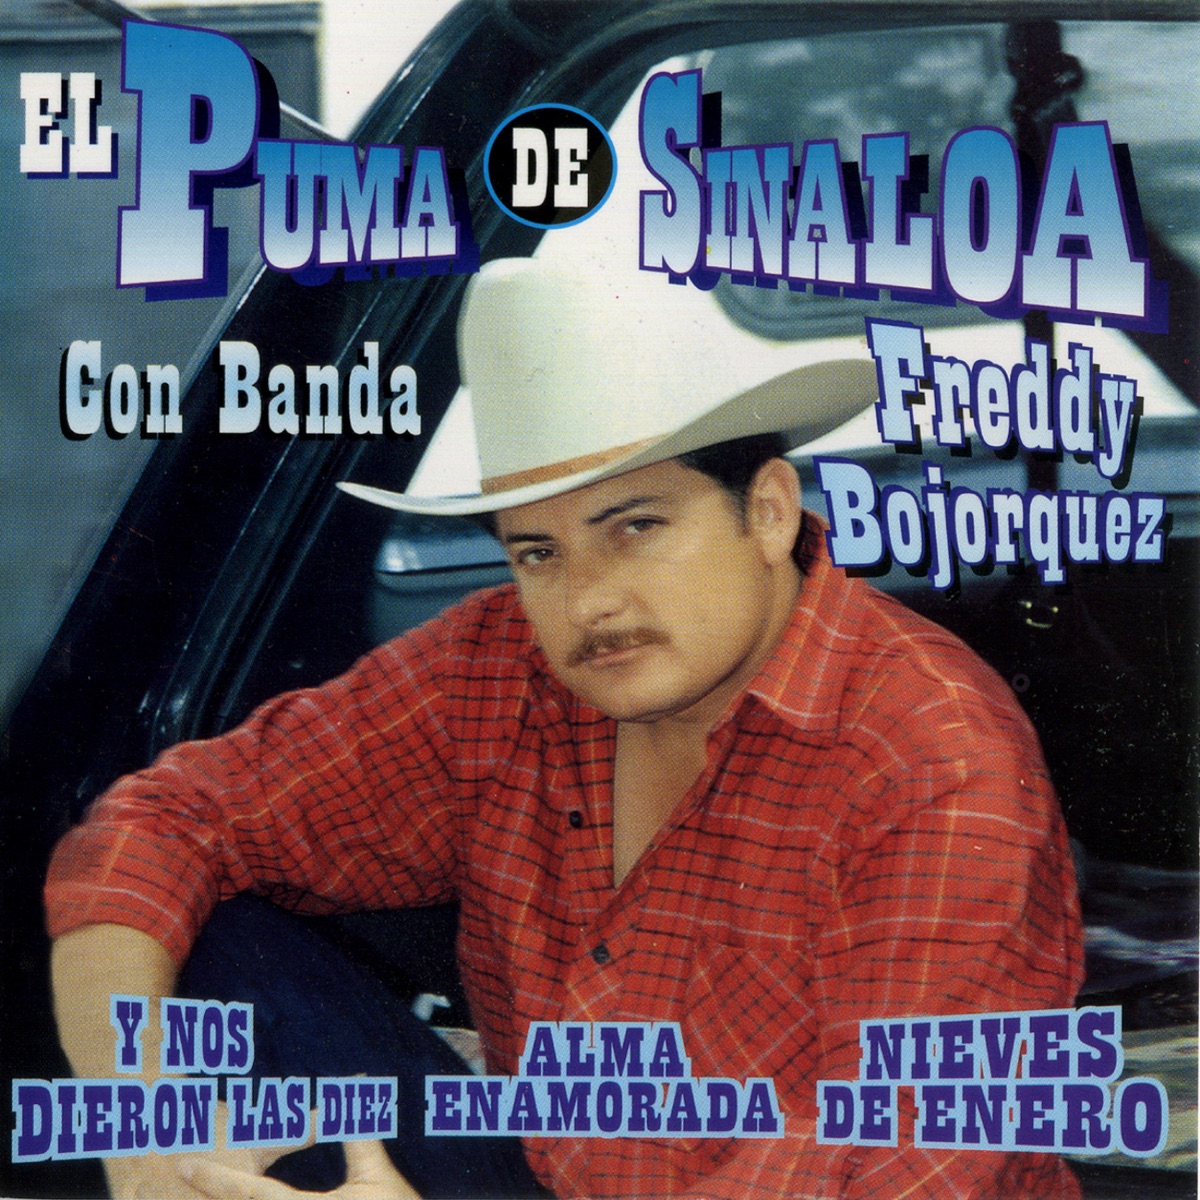 El Puma de Sinaloa Con Banda by Freddy Bojorquez on Apple Music